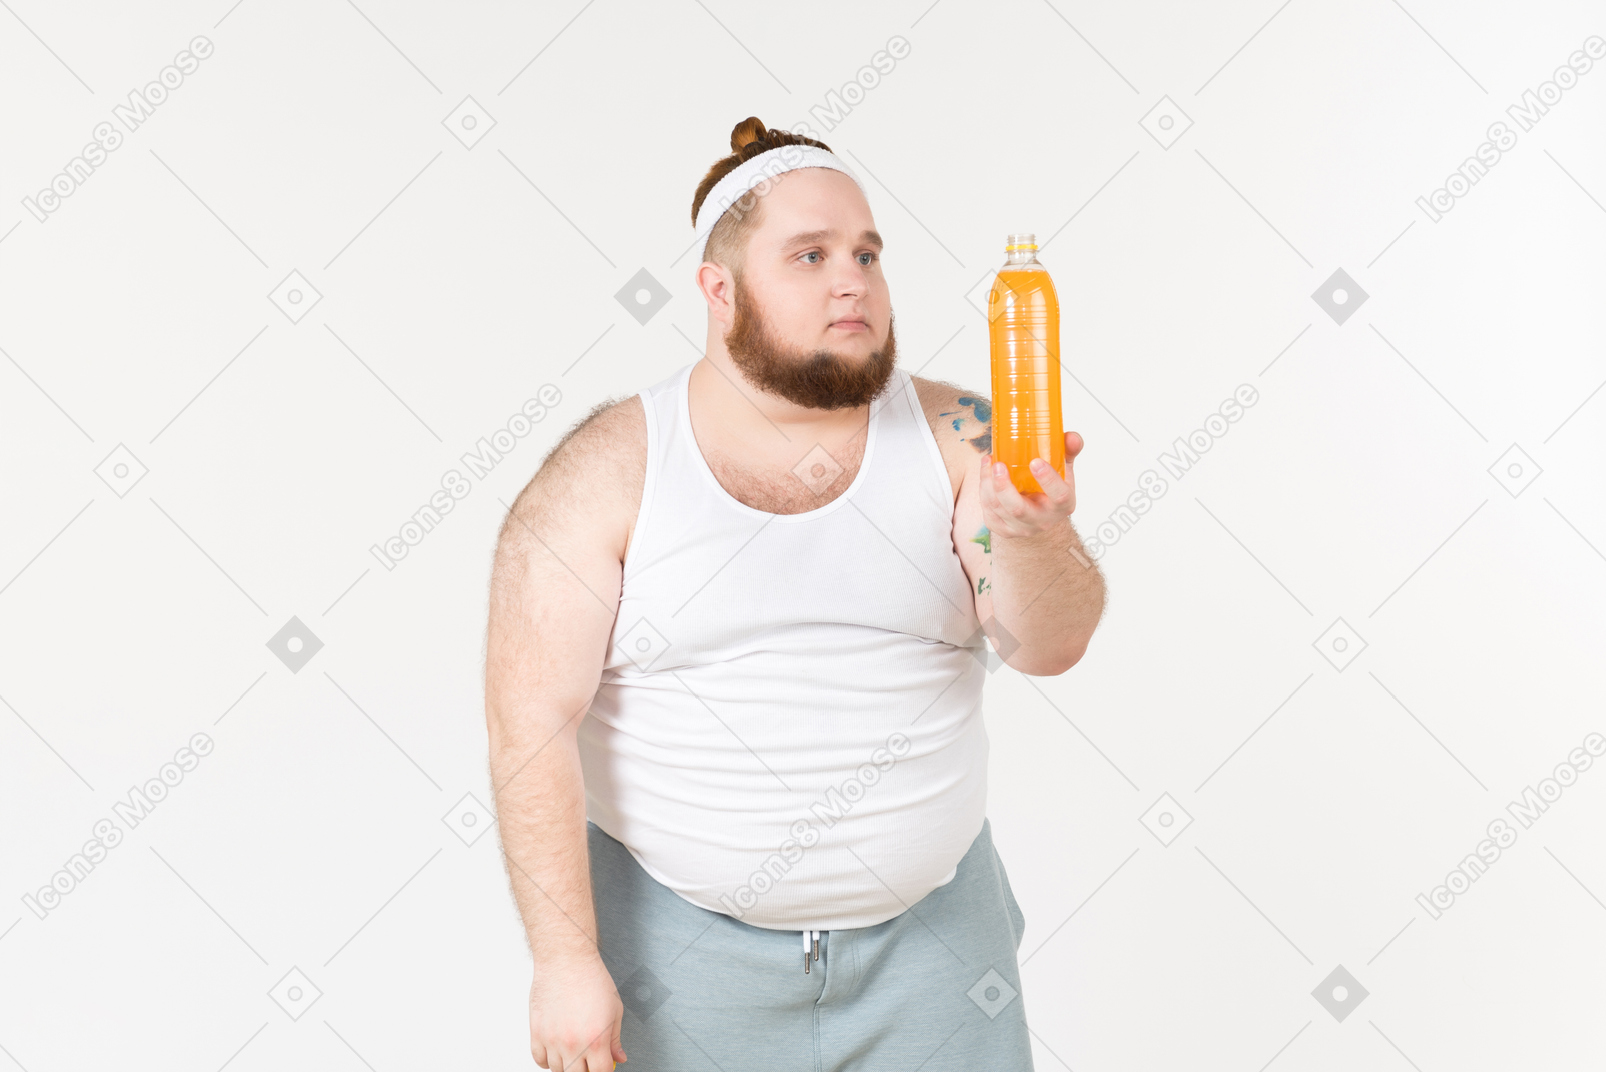 A sad fat man in sportswear holding a bottle of juice